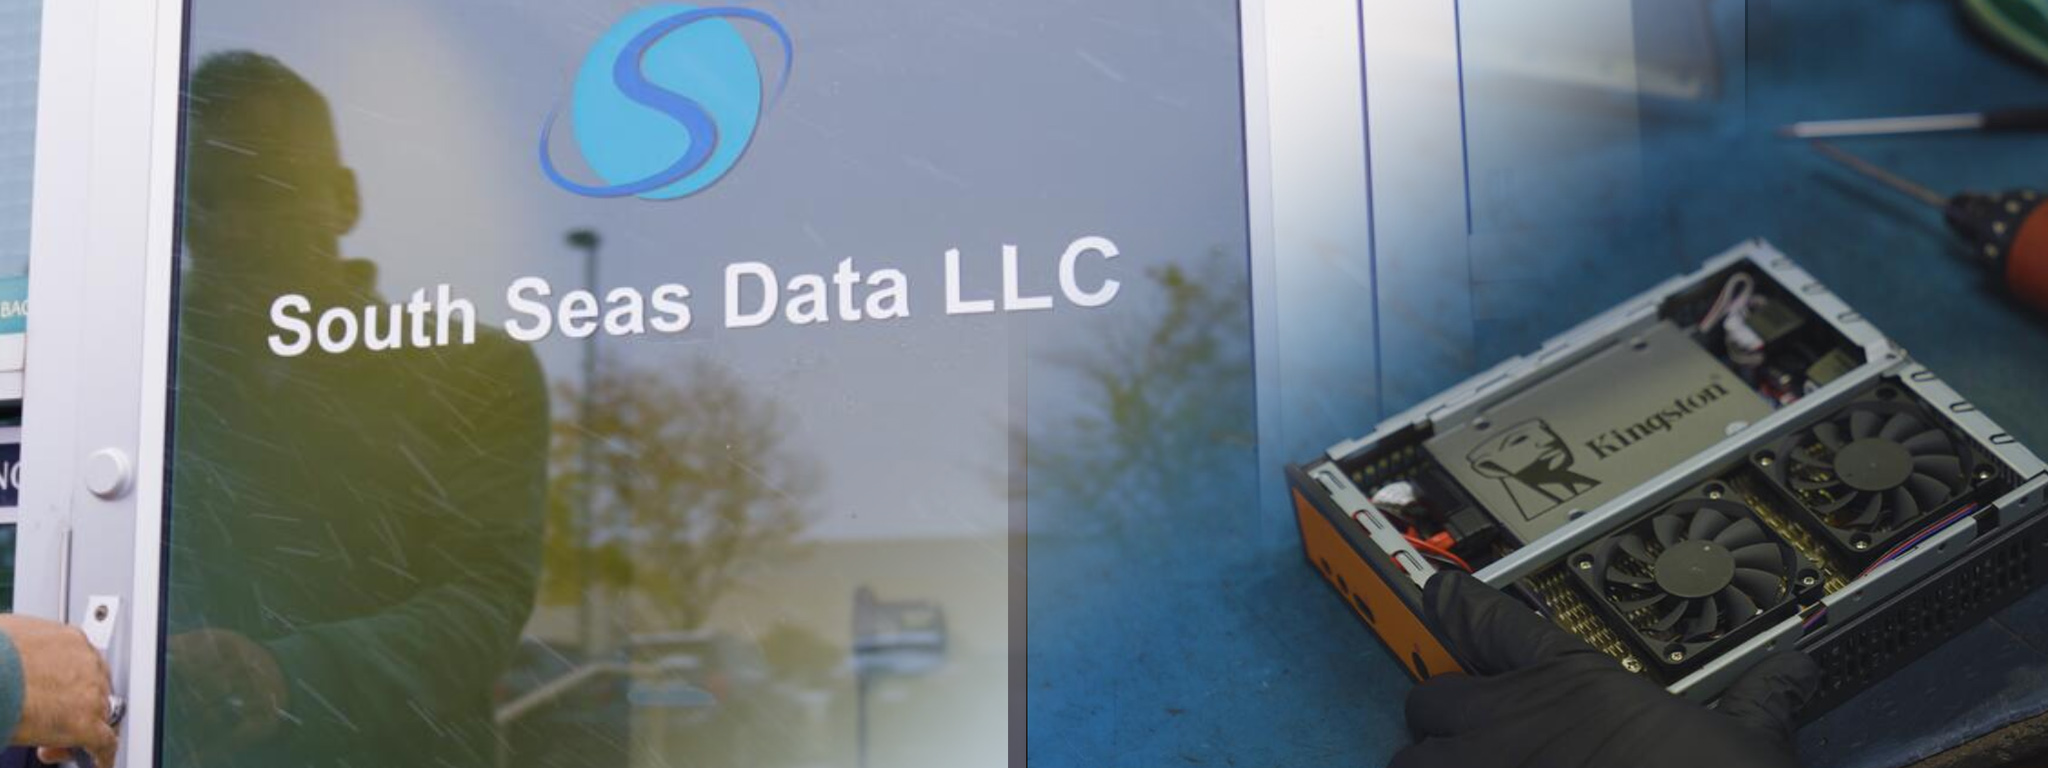 South Seas Data LLC 본사의 정문 위에 겹쳐진 시스템(Kingston SSD가 눈에 잘 띄게 탑재되어 있음)의 그림.